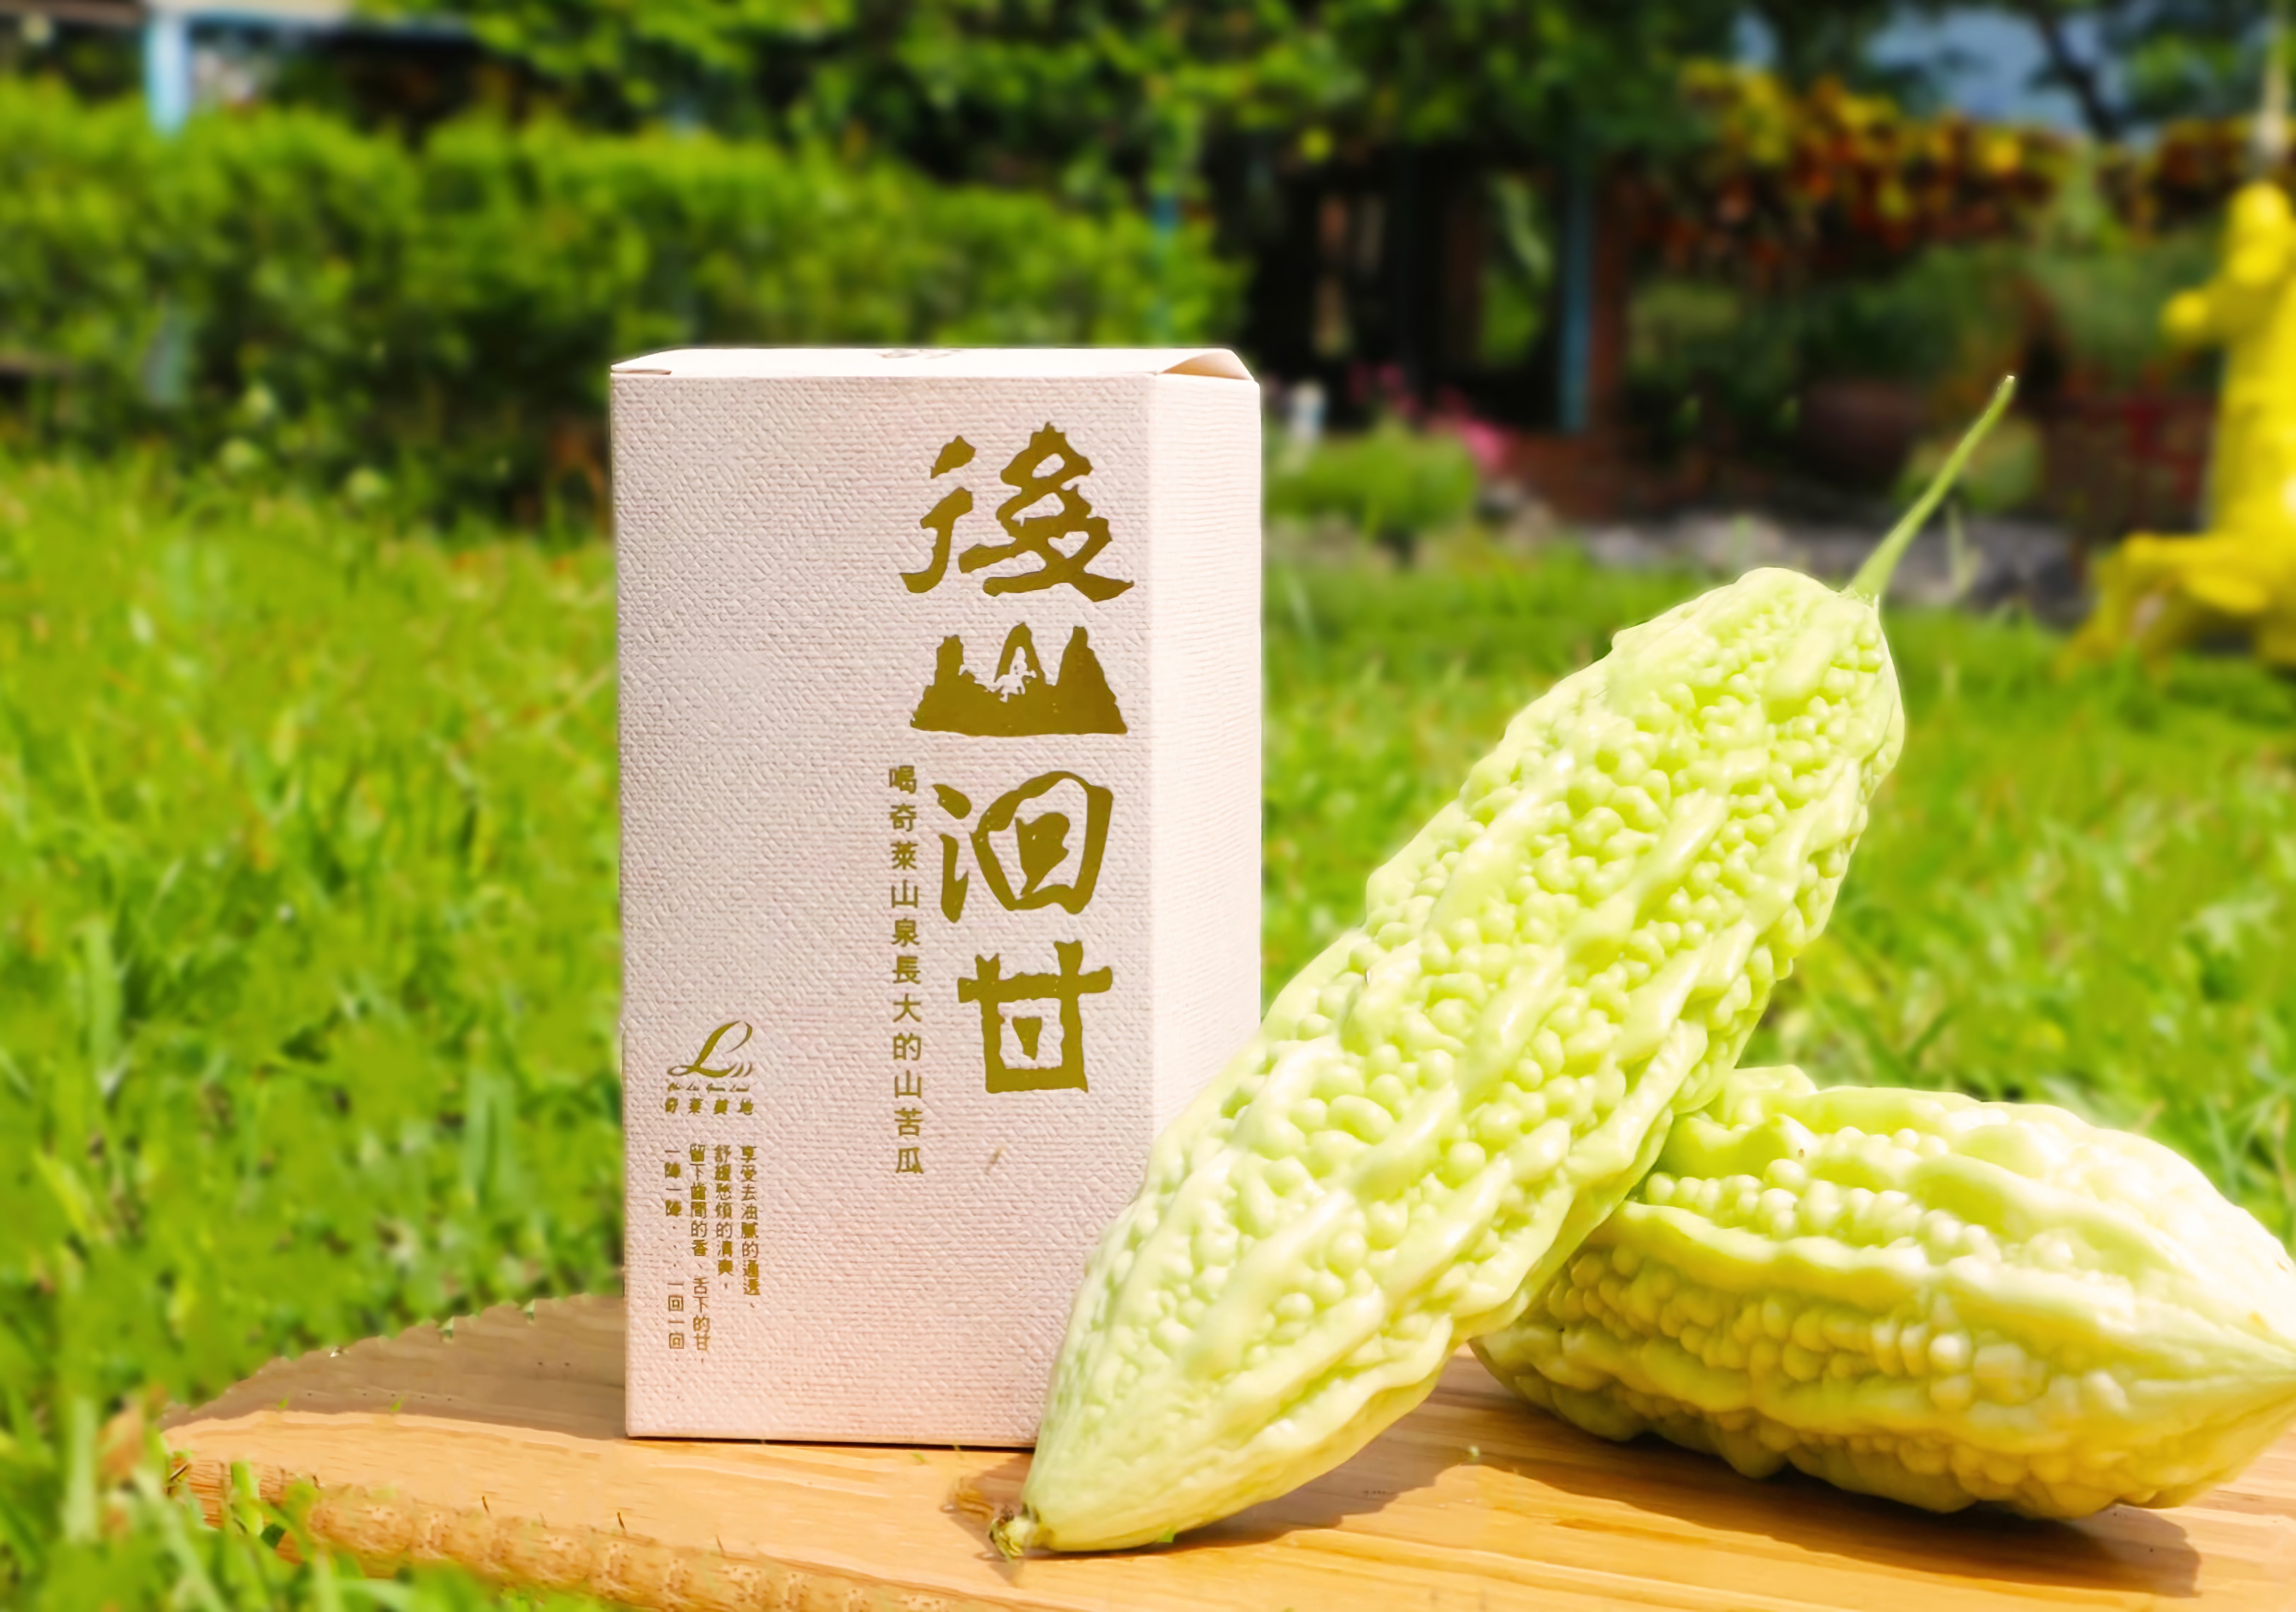 苦瓜花蓮2號是奇萊美地積極加工的特色作物，「後山洄甘」苦瓜茶帶有特殊的回甘滋味。